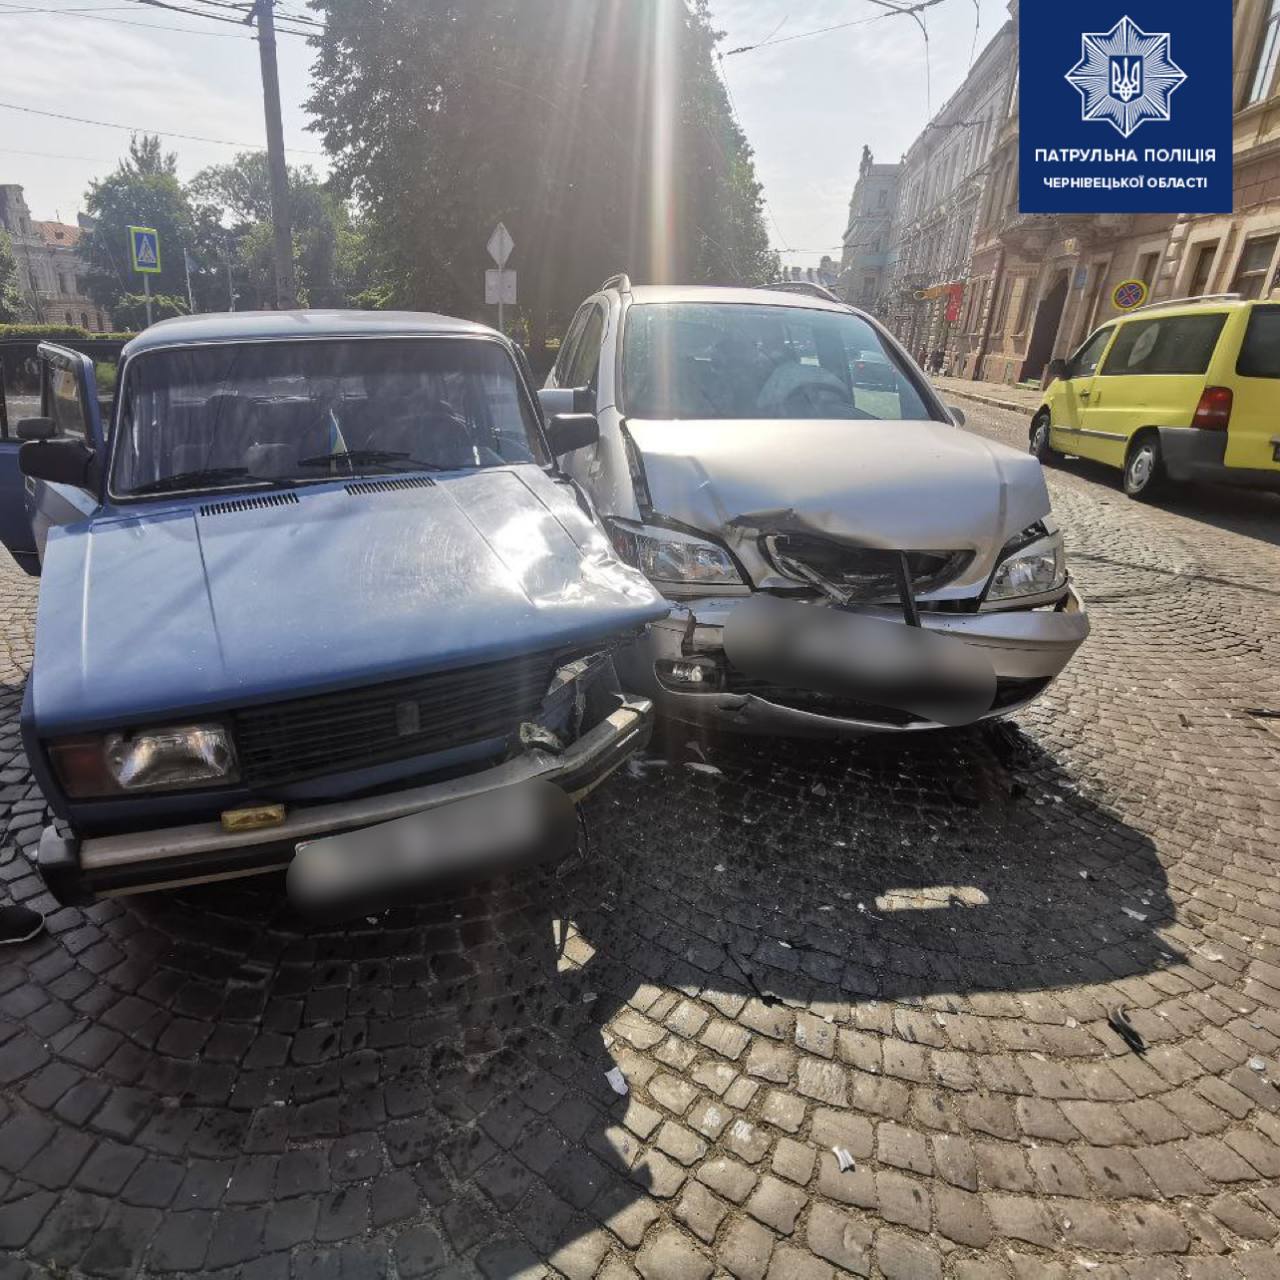 ДТП з потерпілими: у центрі Чернівців зіткнулися два легкових автомобілі